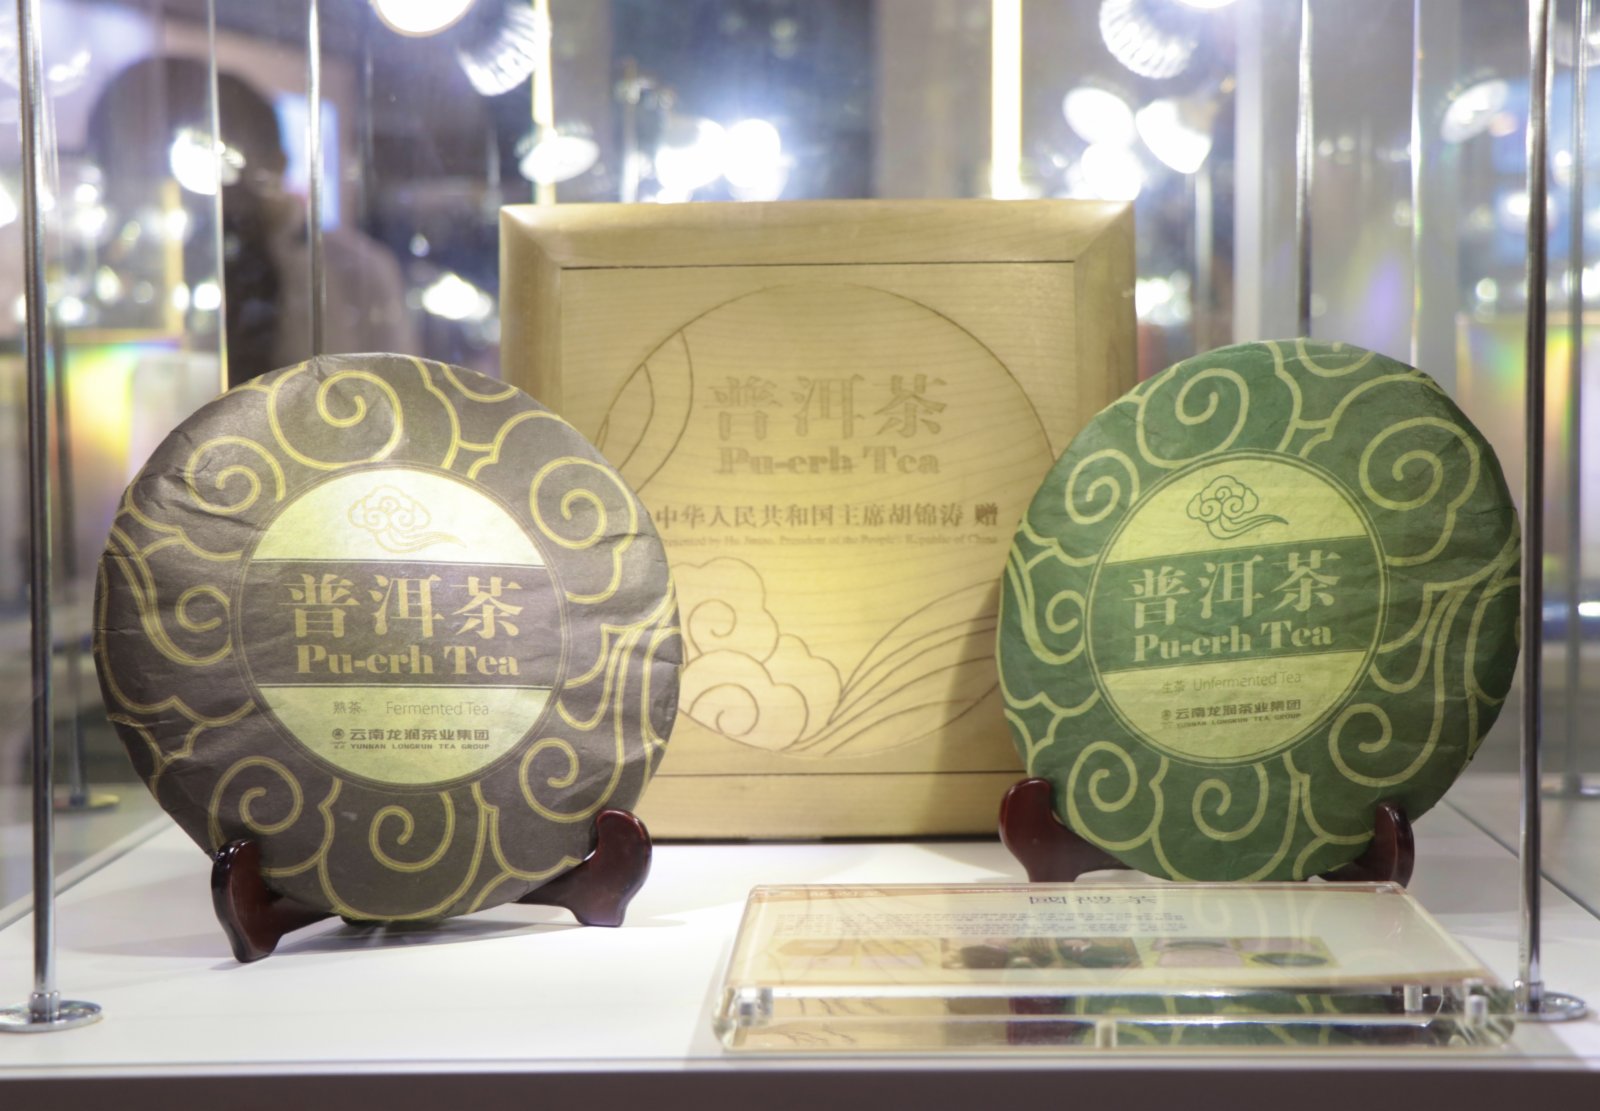 由香港貿易發展局主辦的美食博覽、家電·家品·博覽、美與健生活博覽以及香港國際茶展4大展覽，將從明日（11日）起一連五天在會議展覽中心舉行。